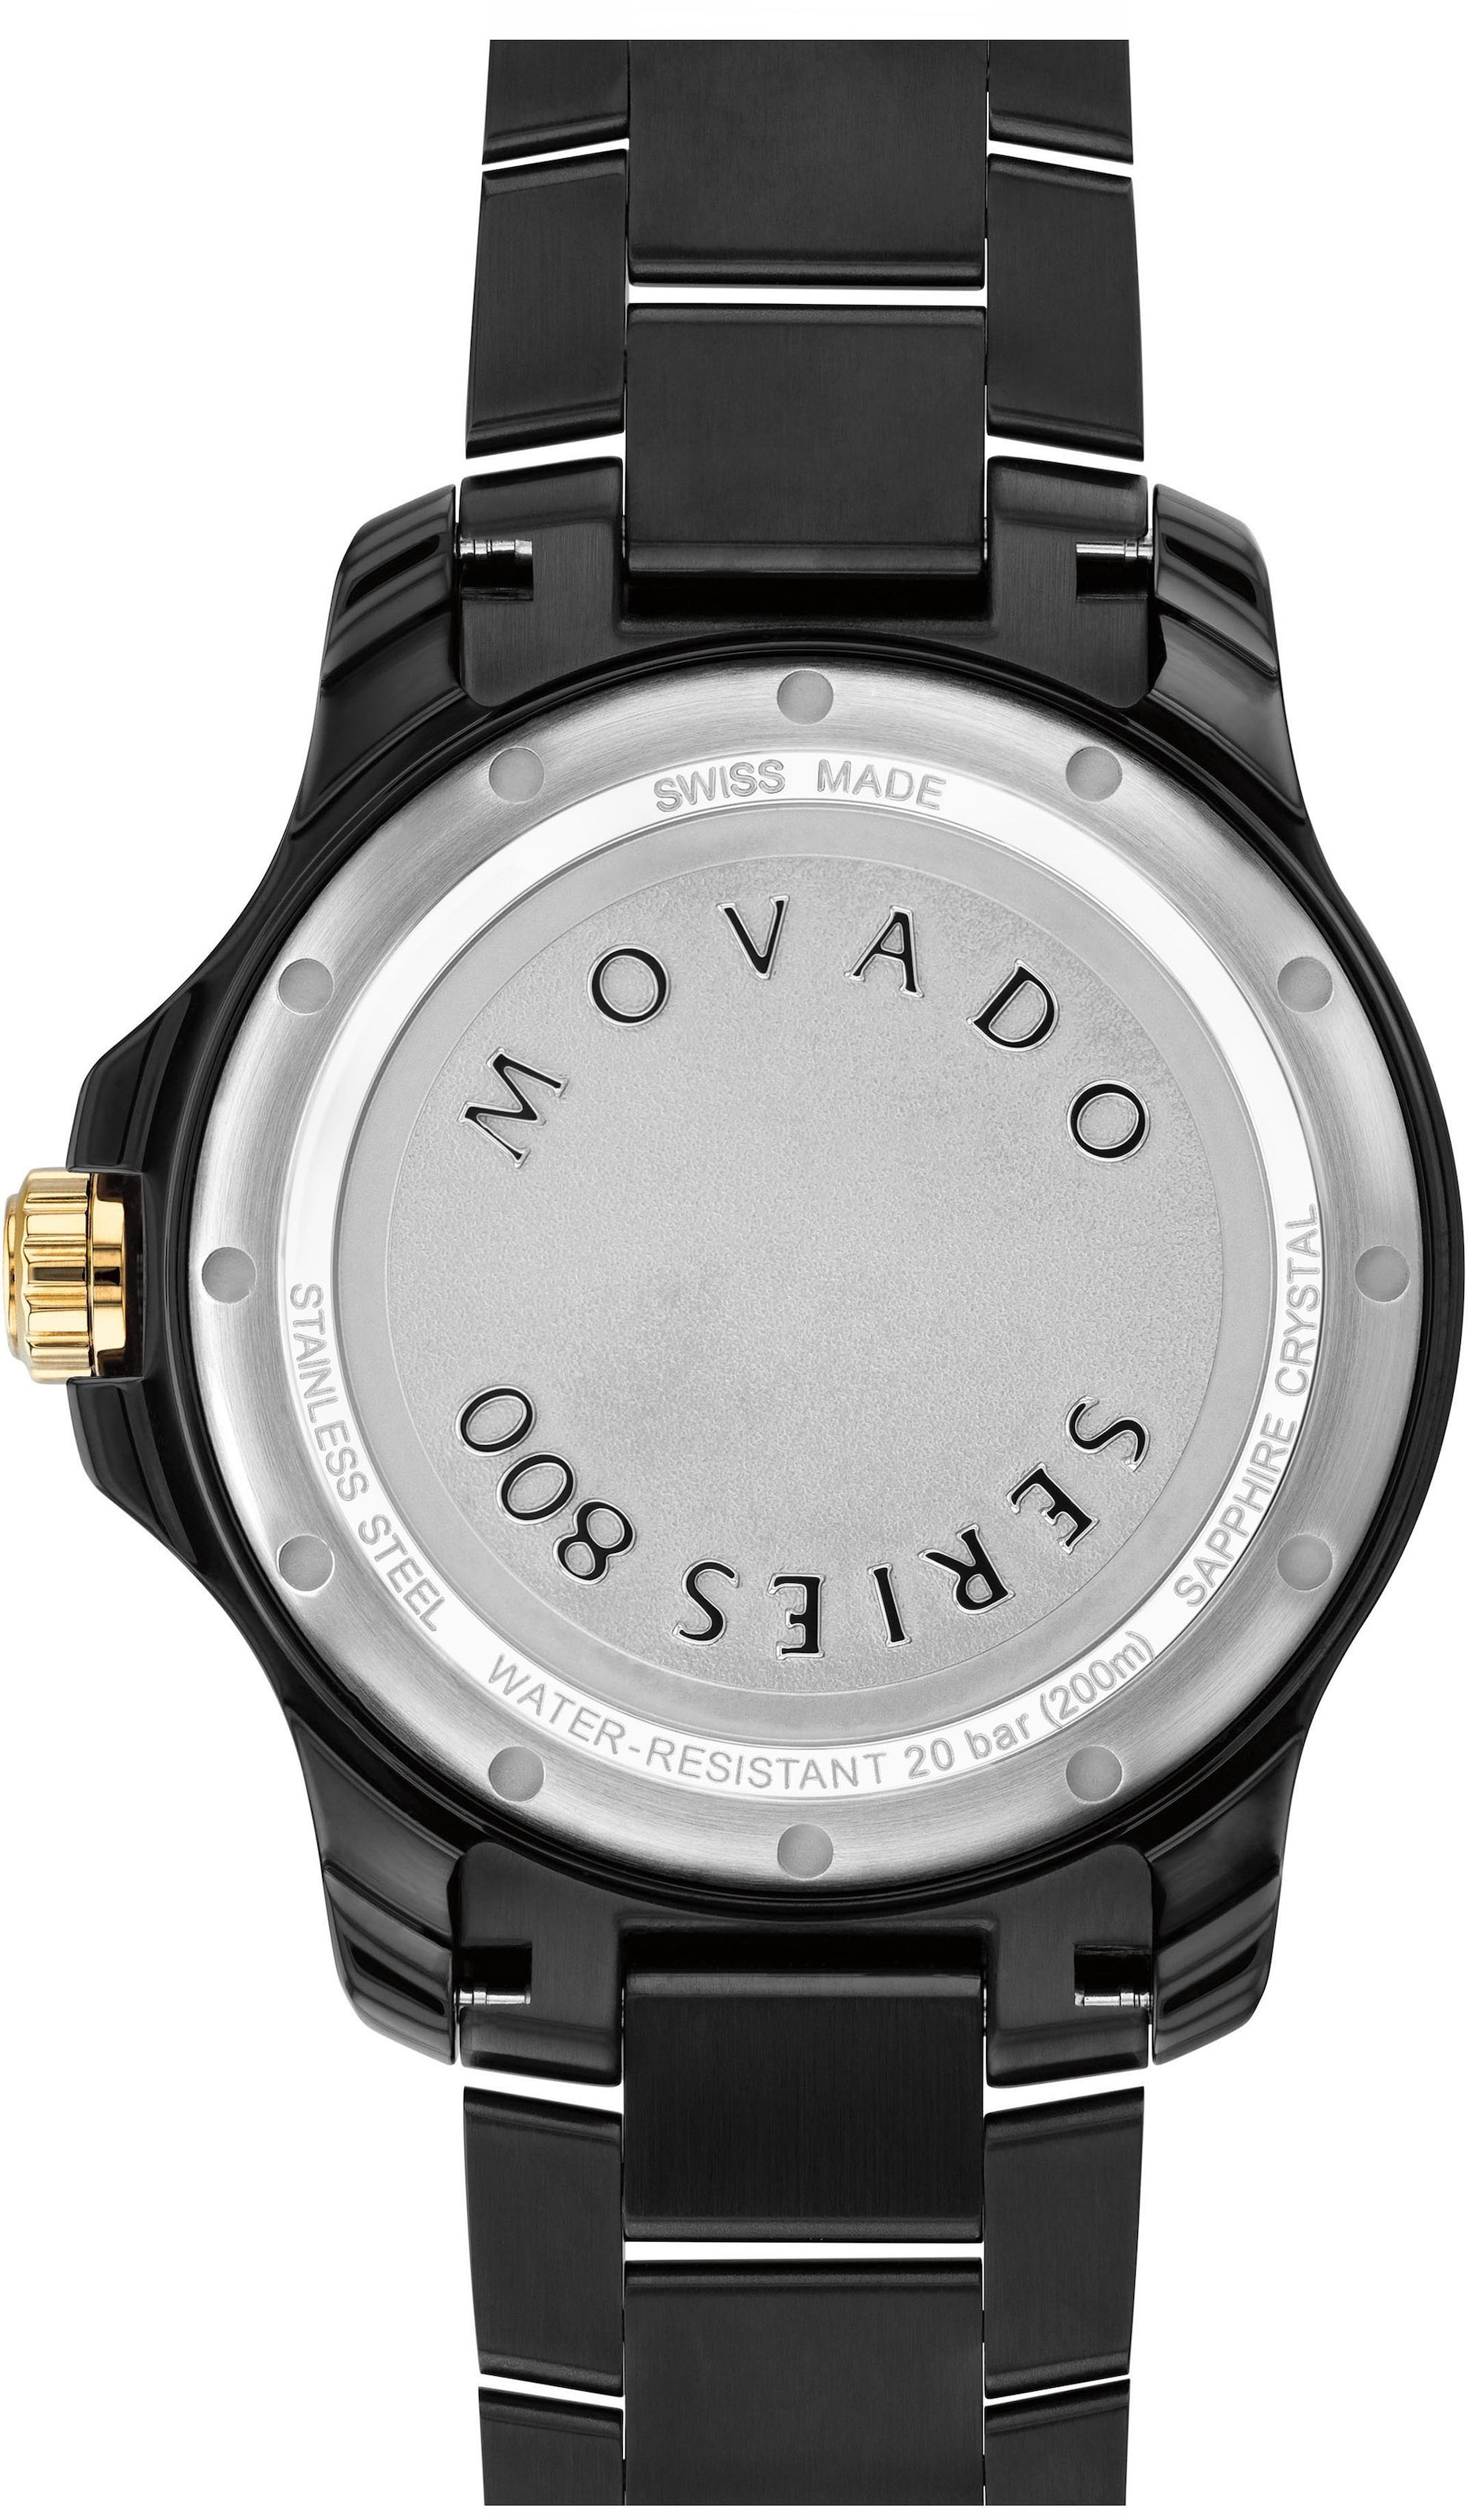 MOVADO Schweizer Uhr »Series 800, 2600161« online kaufen | UNIVERSAL